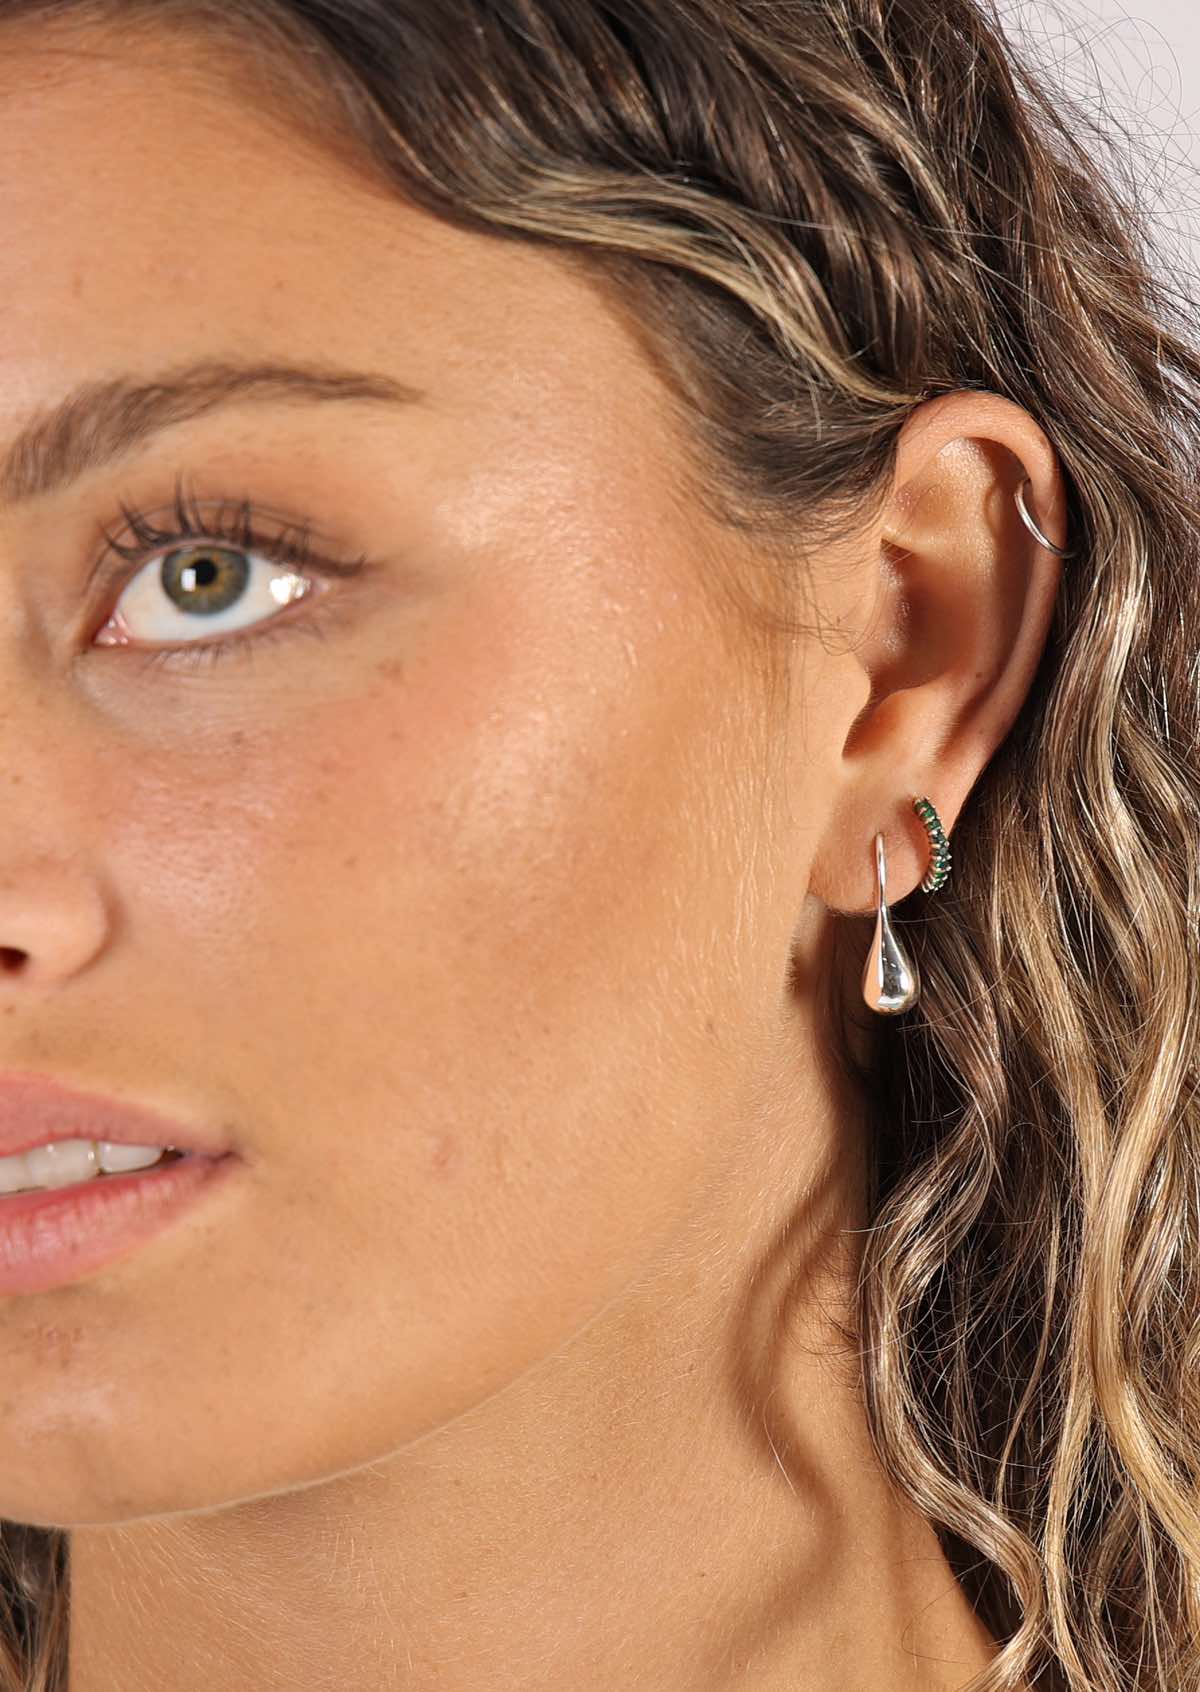 woman wearing silver drop earrings